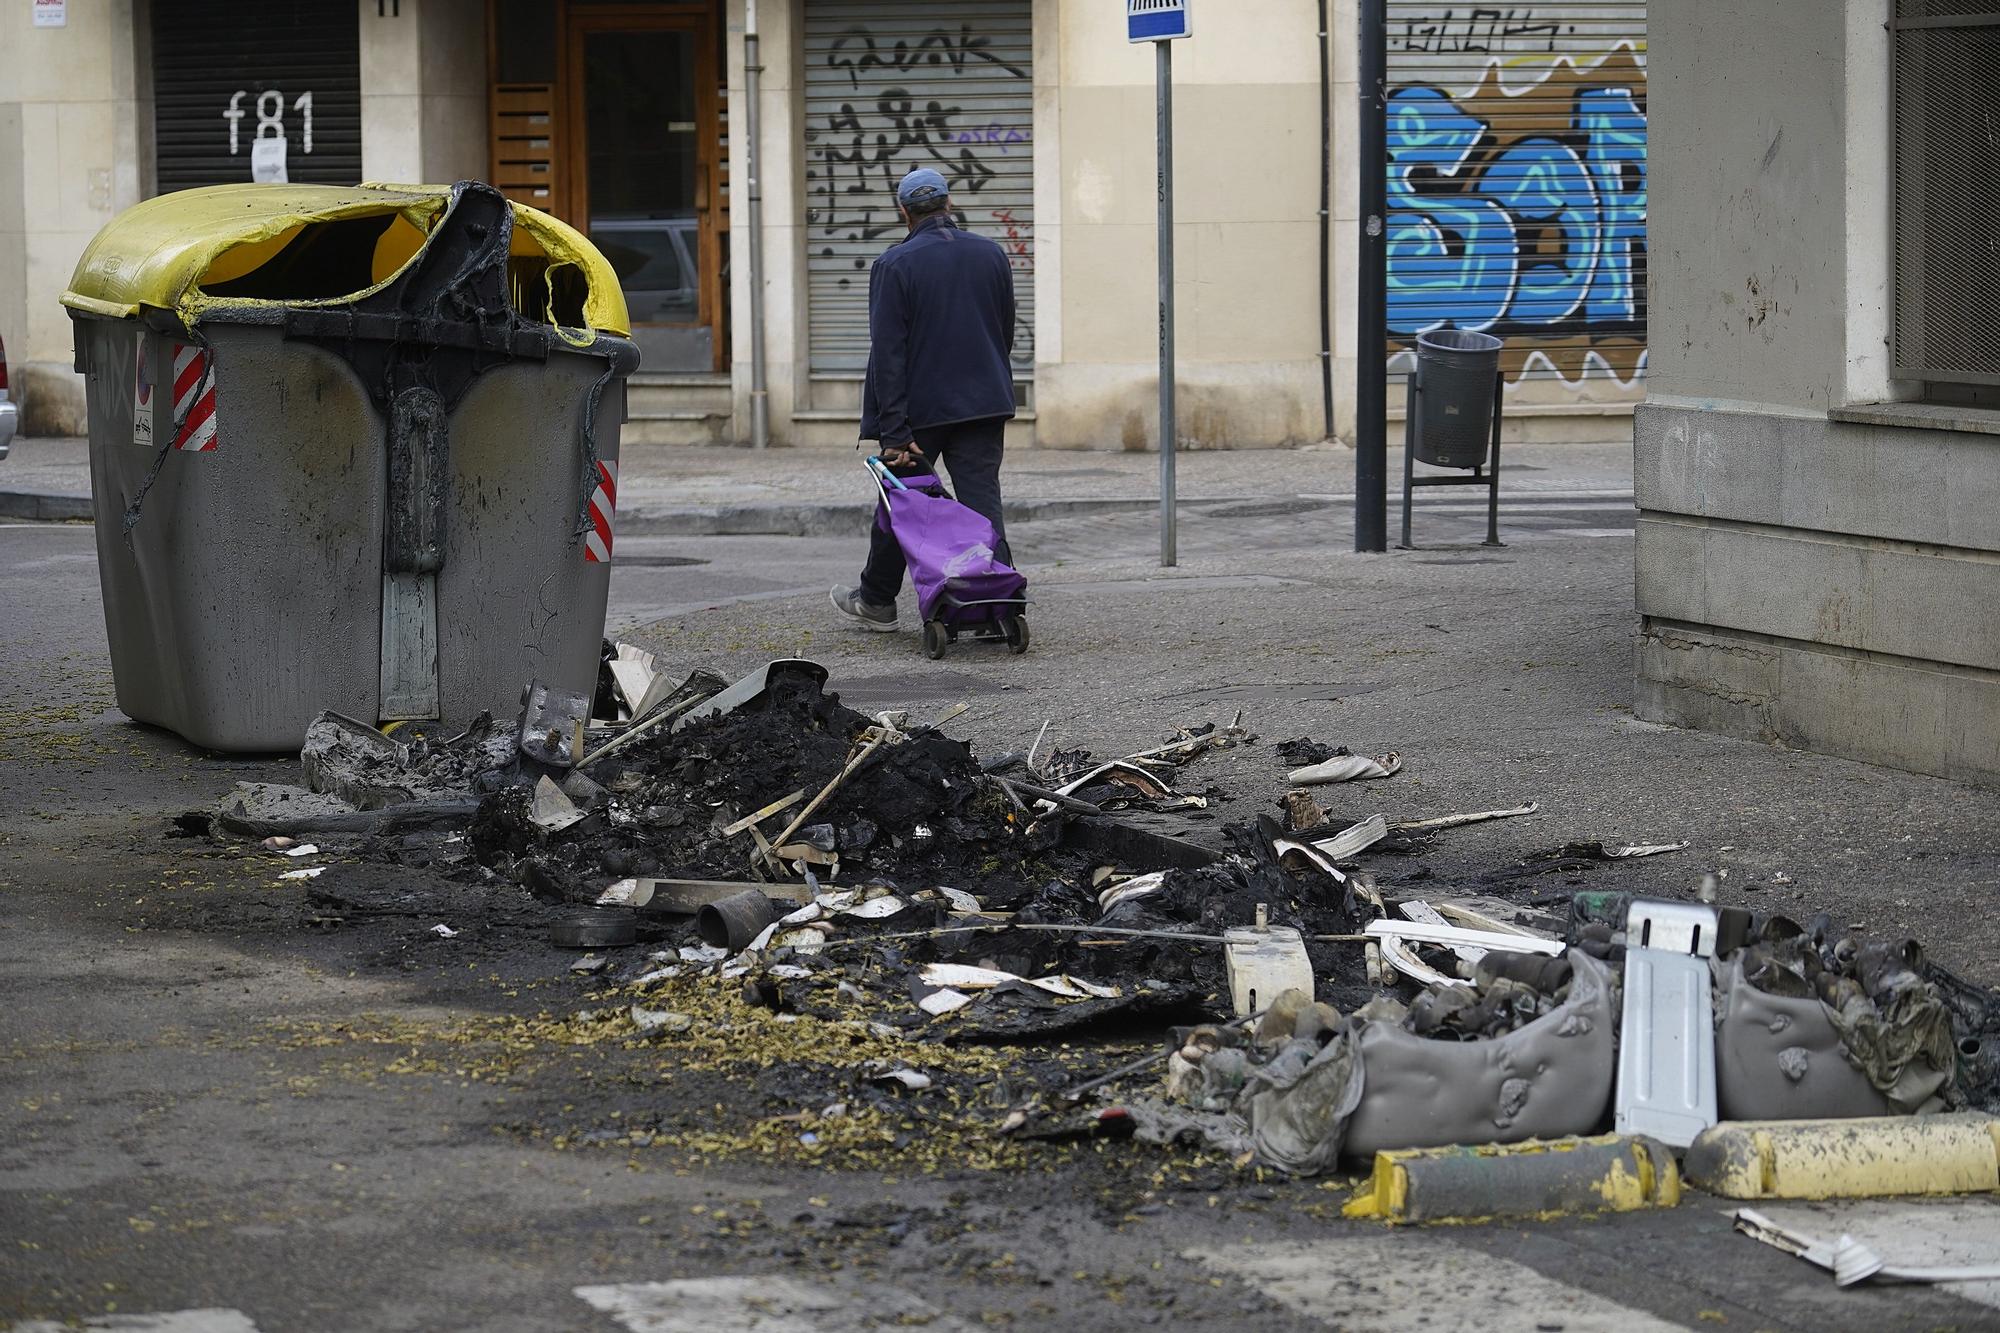 Cremen una vintena de contenidors a Girona i causen danys en façanes i vehicles